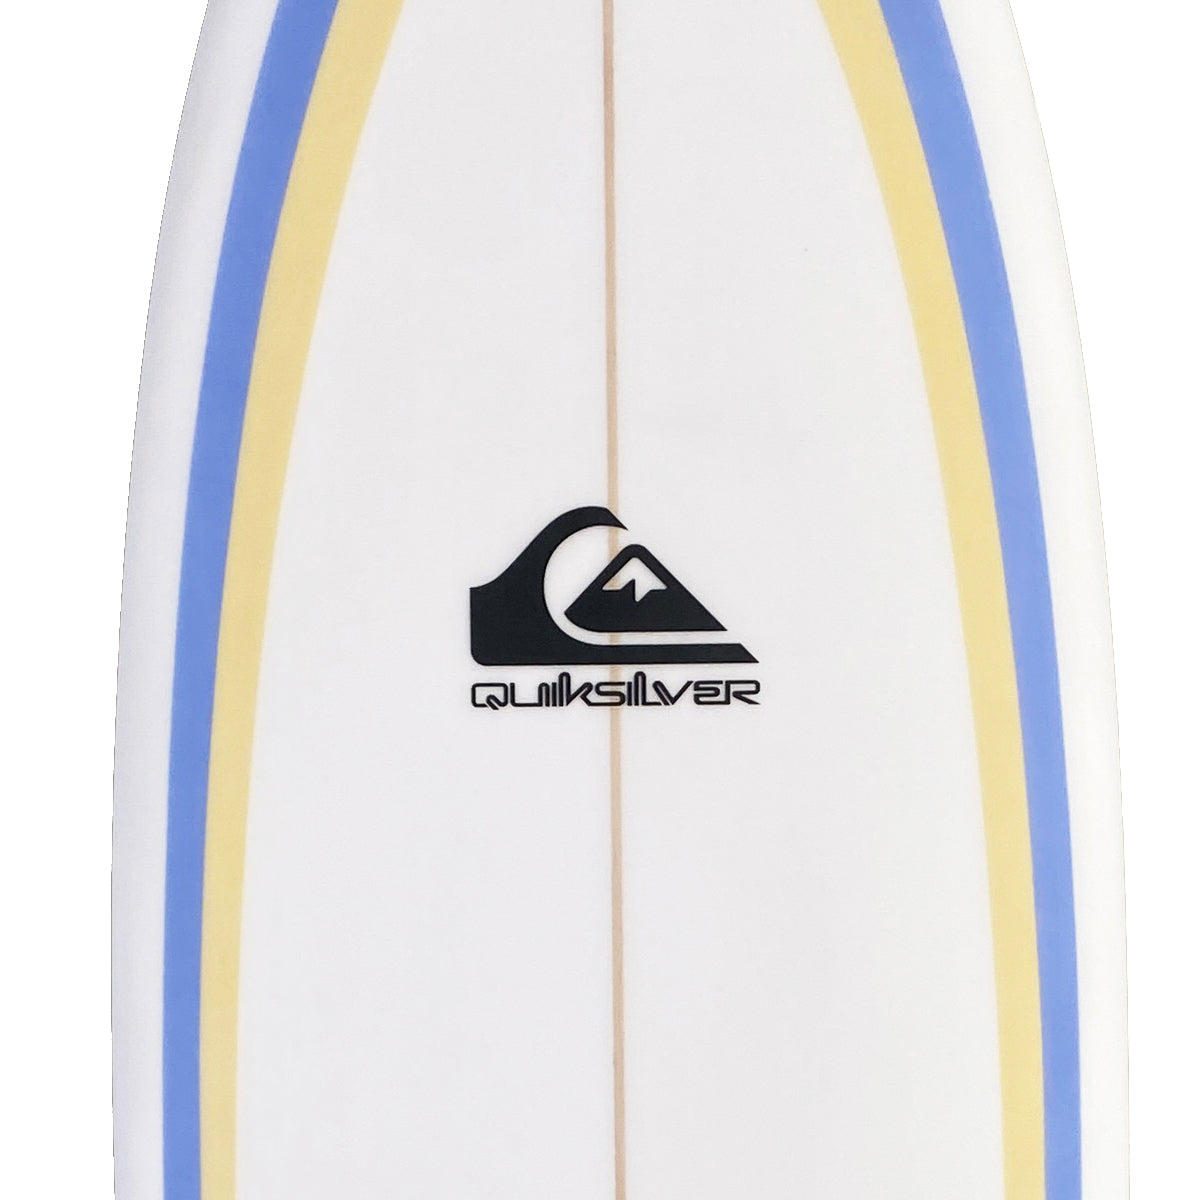 QS BADBOARD  6'4 SURFBOARD